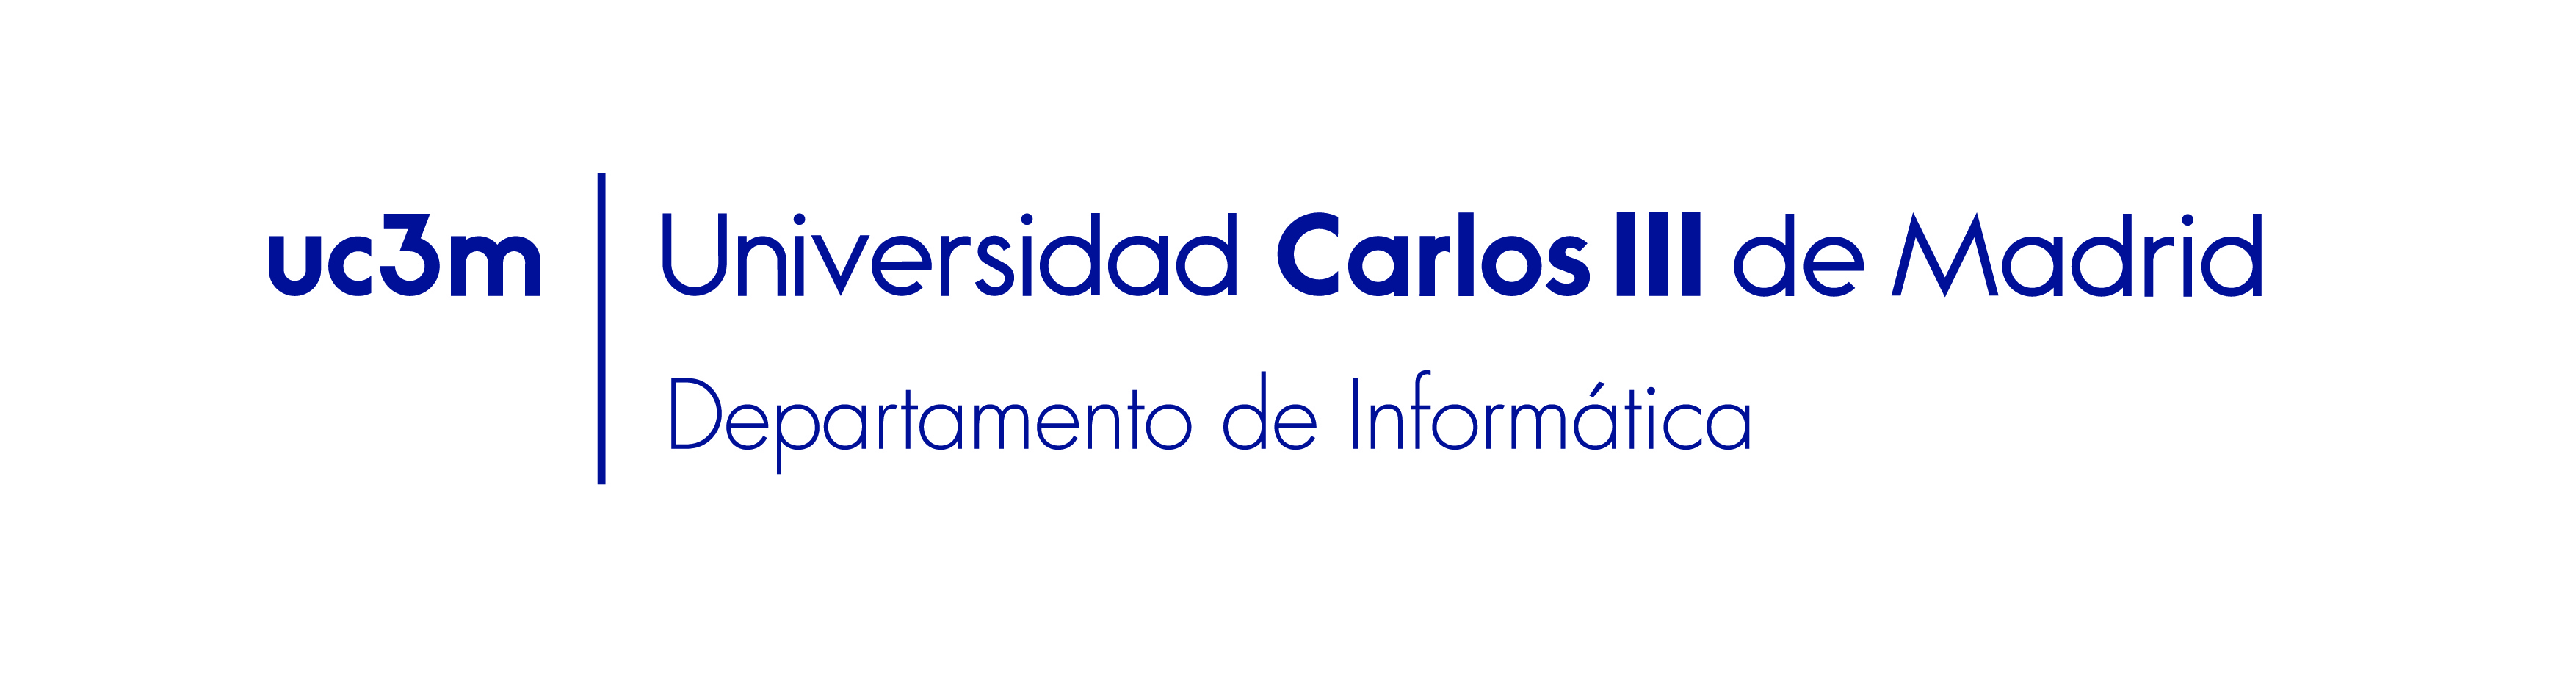 Logo del departamento de Informática de la Universidad Carlos III